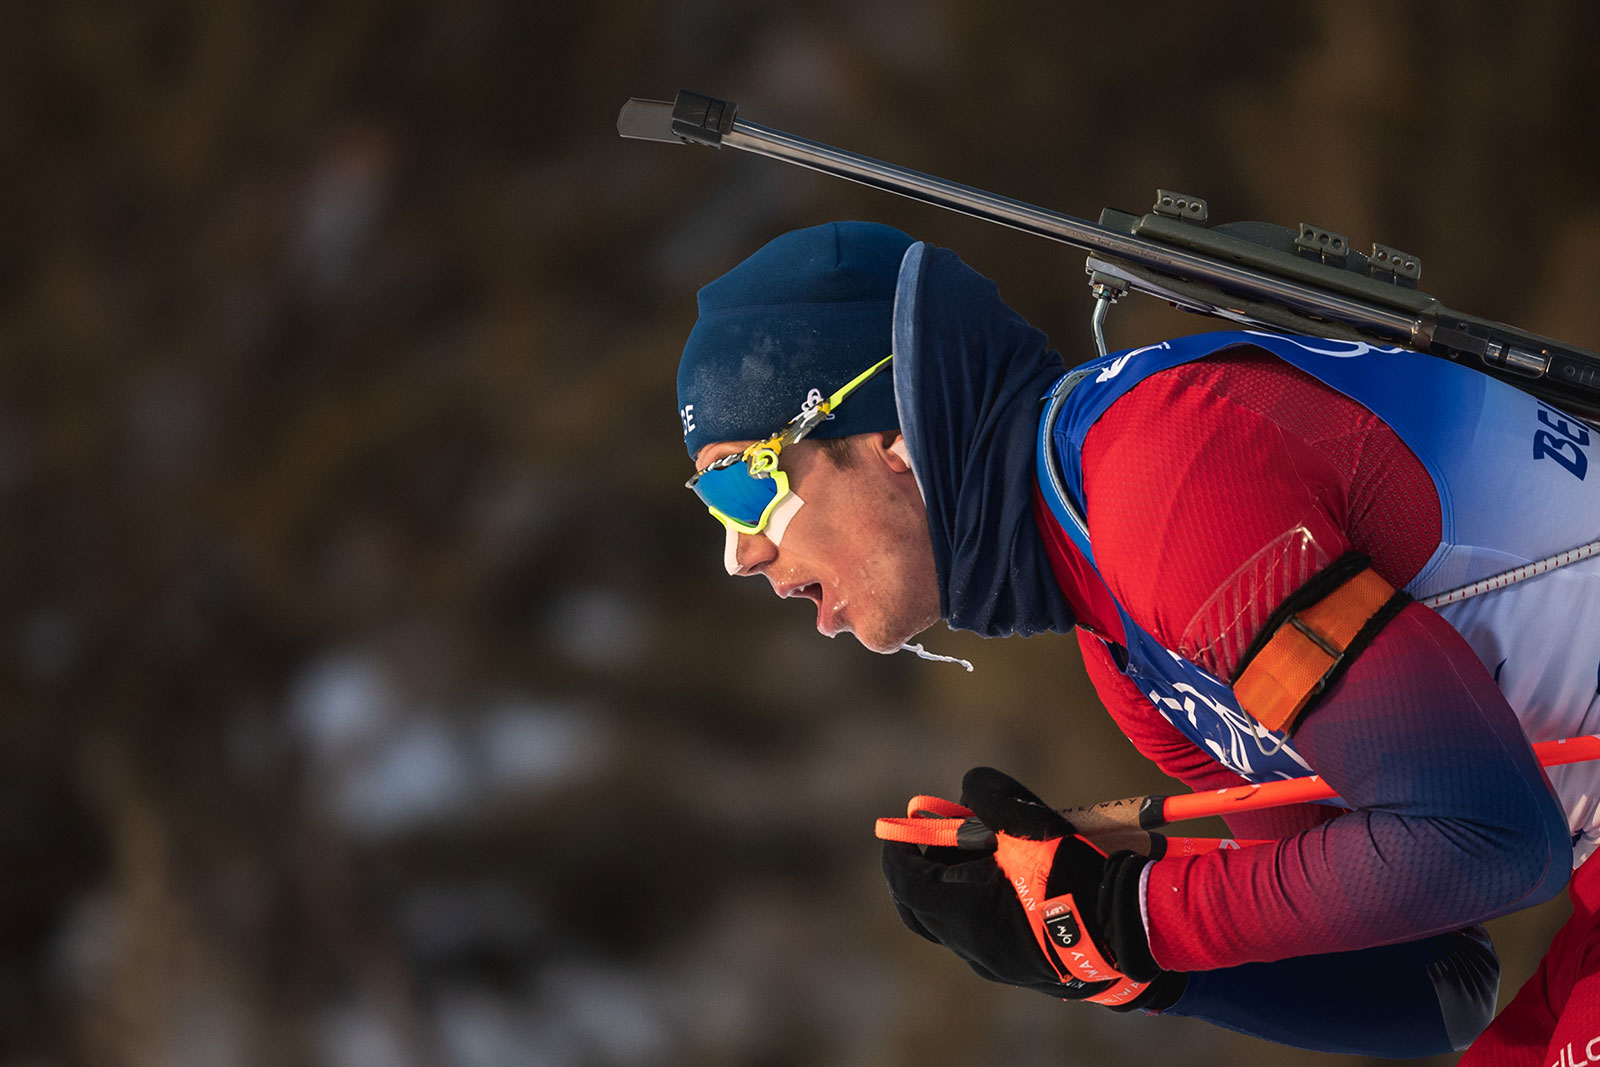 Norway's Vetle Sjåstad Christiansen competes in the men's 15km mass start biathlon on February 18.